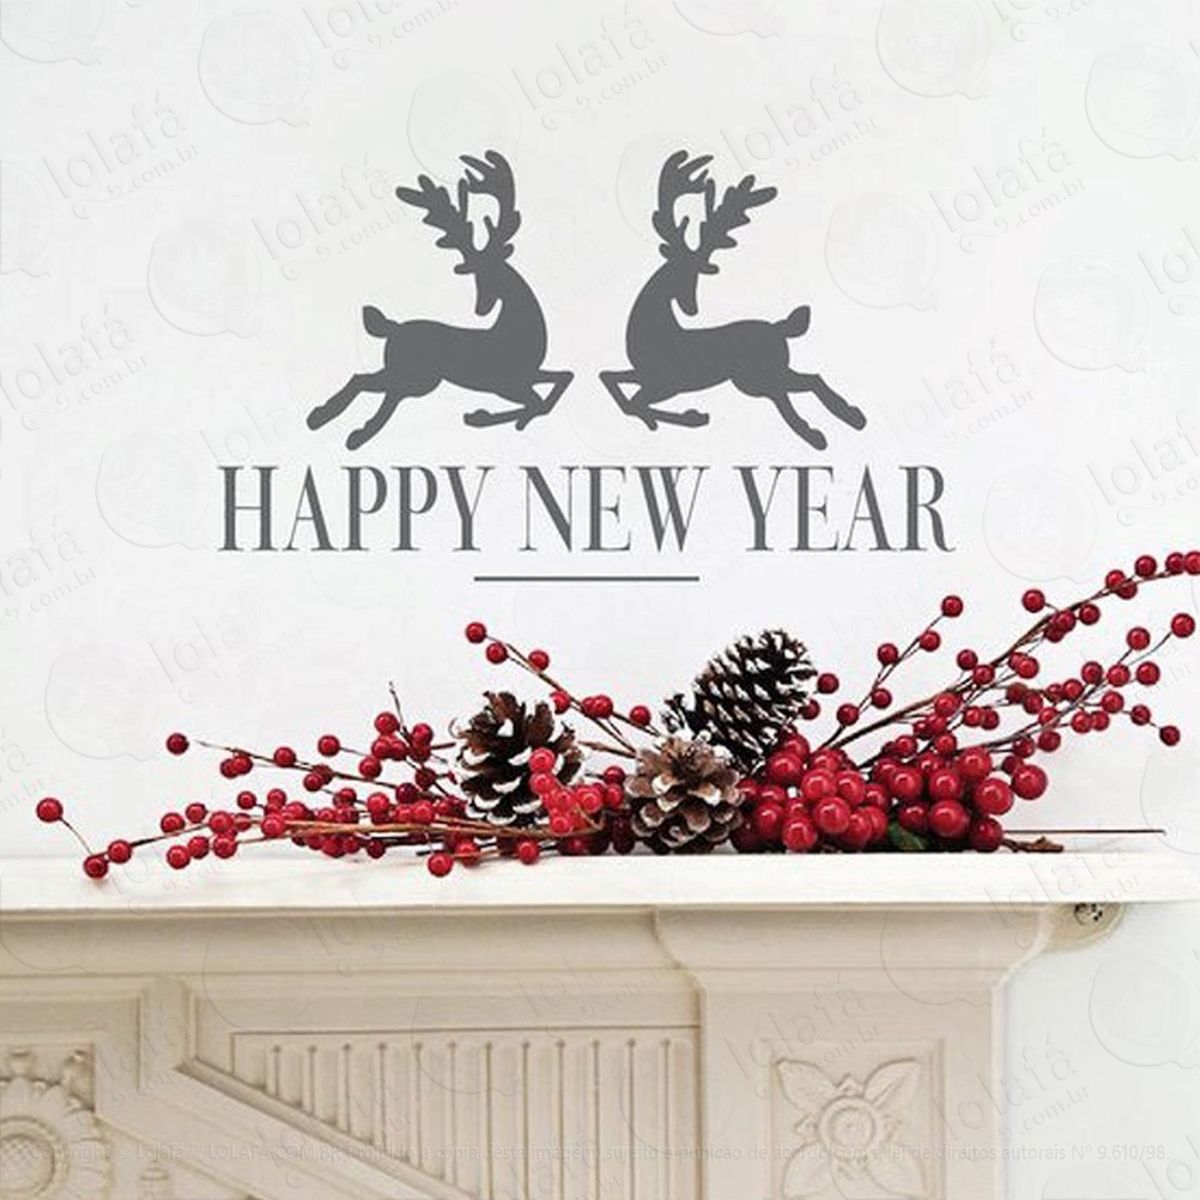 renas do ano novo adesivo de natal para vitrine, parede, porta de vidro - decoração natalina mod:230